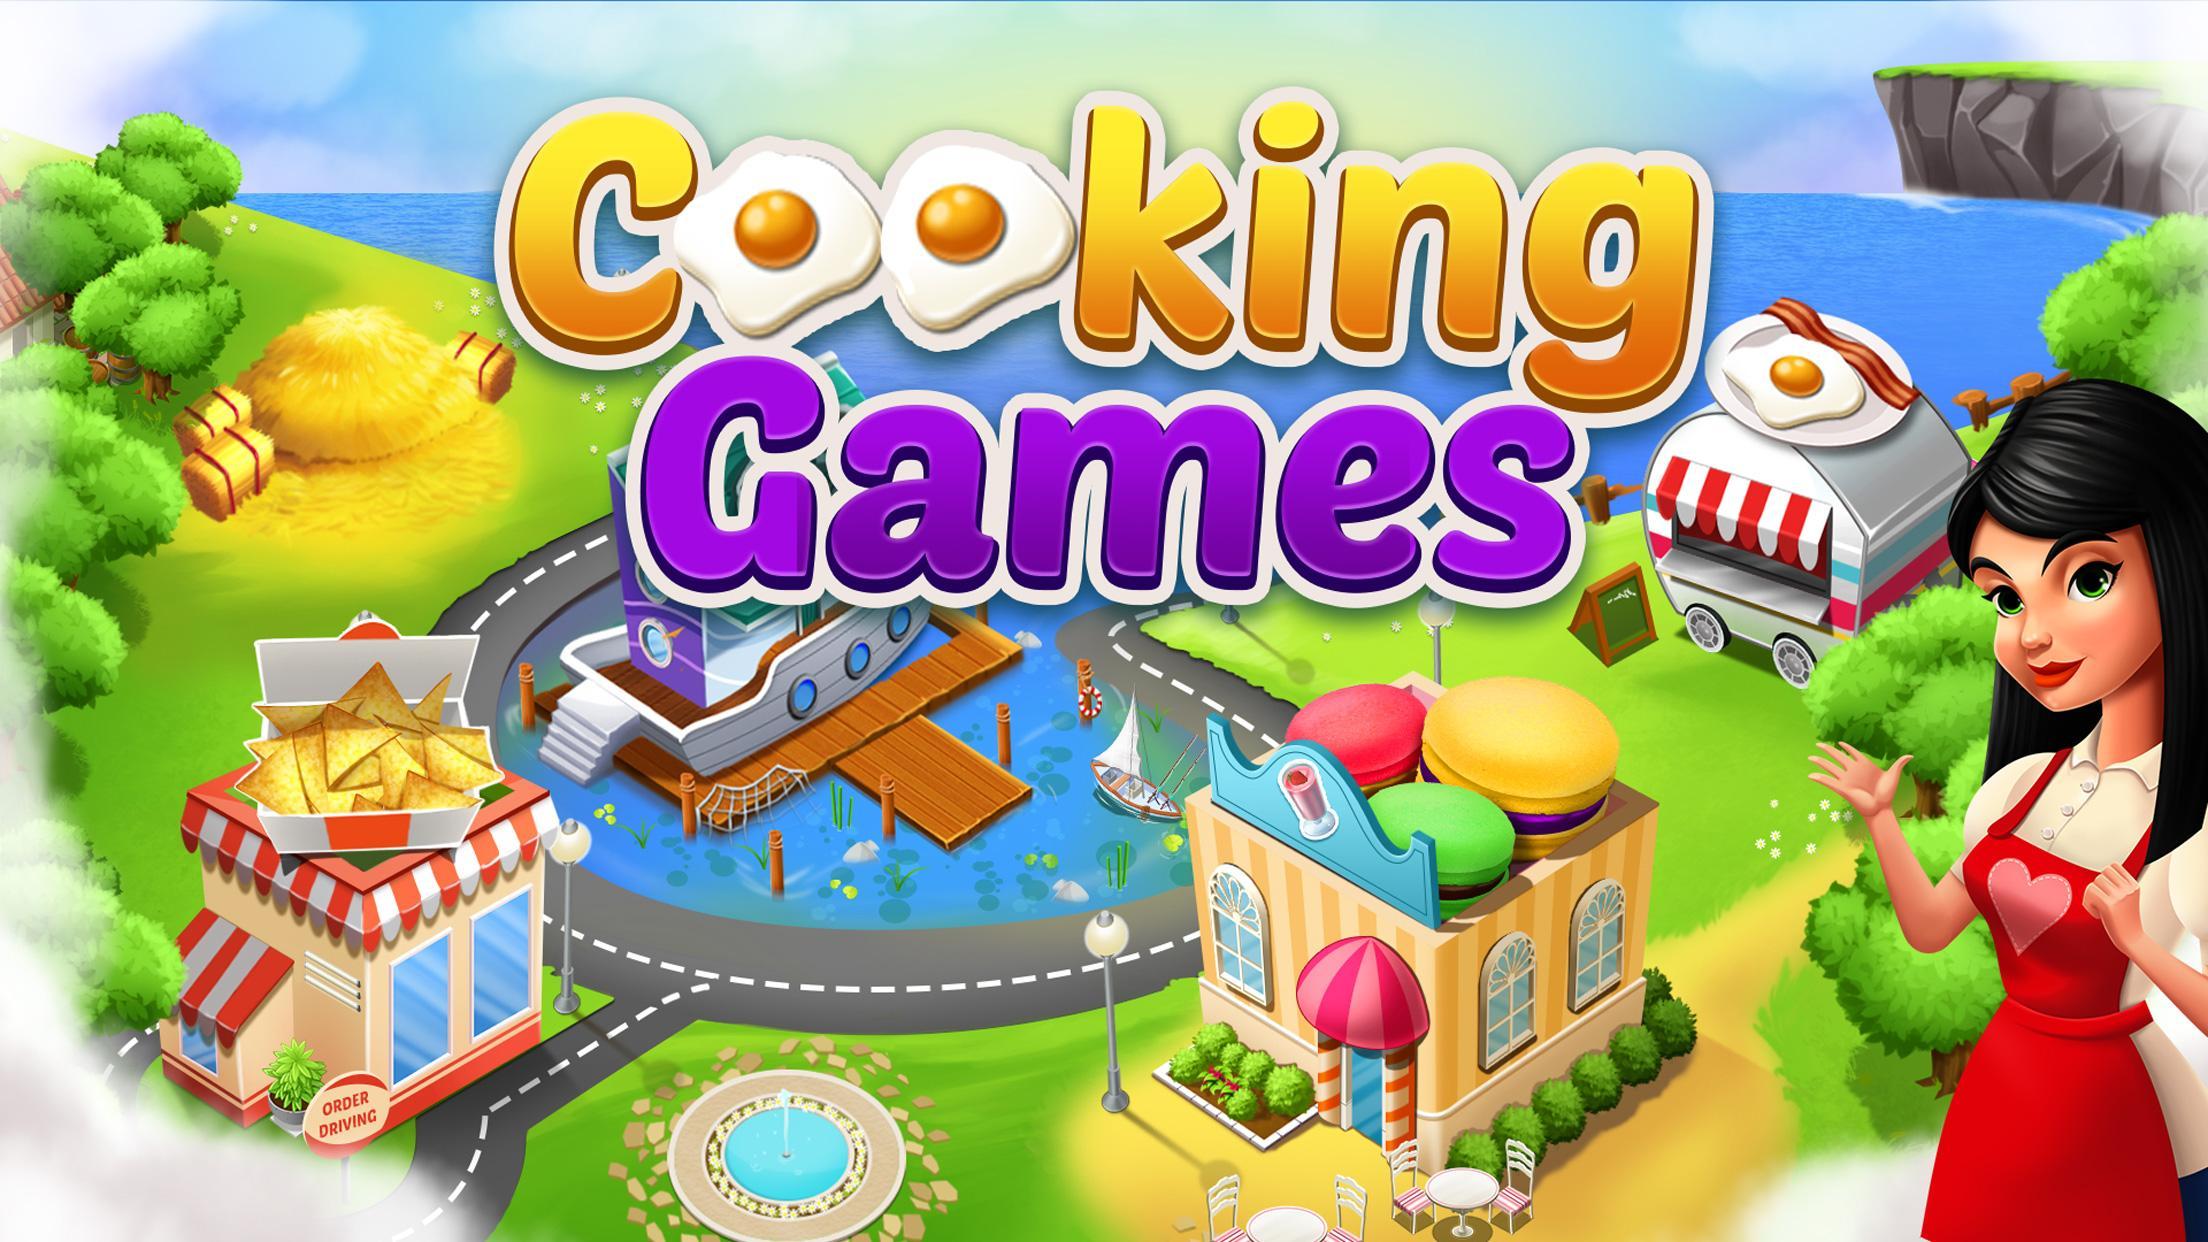 Download Game Memasak Kue Gratis  Untuk Pc Berbagai Kue